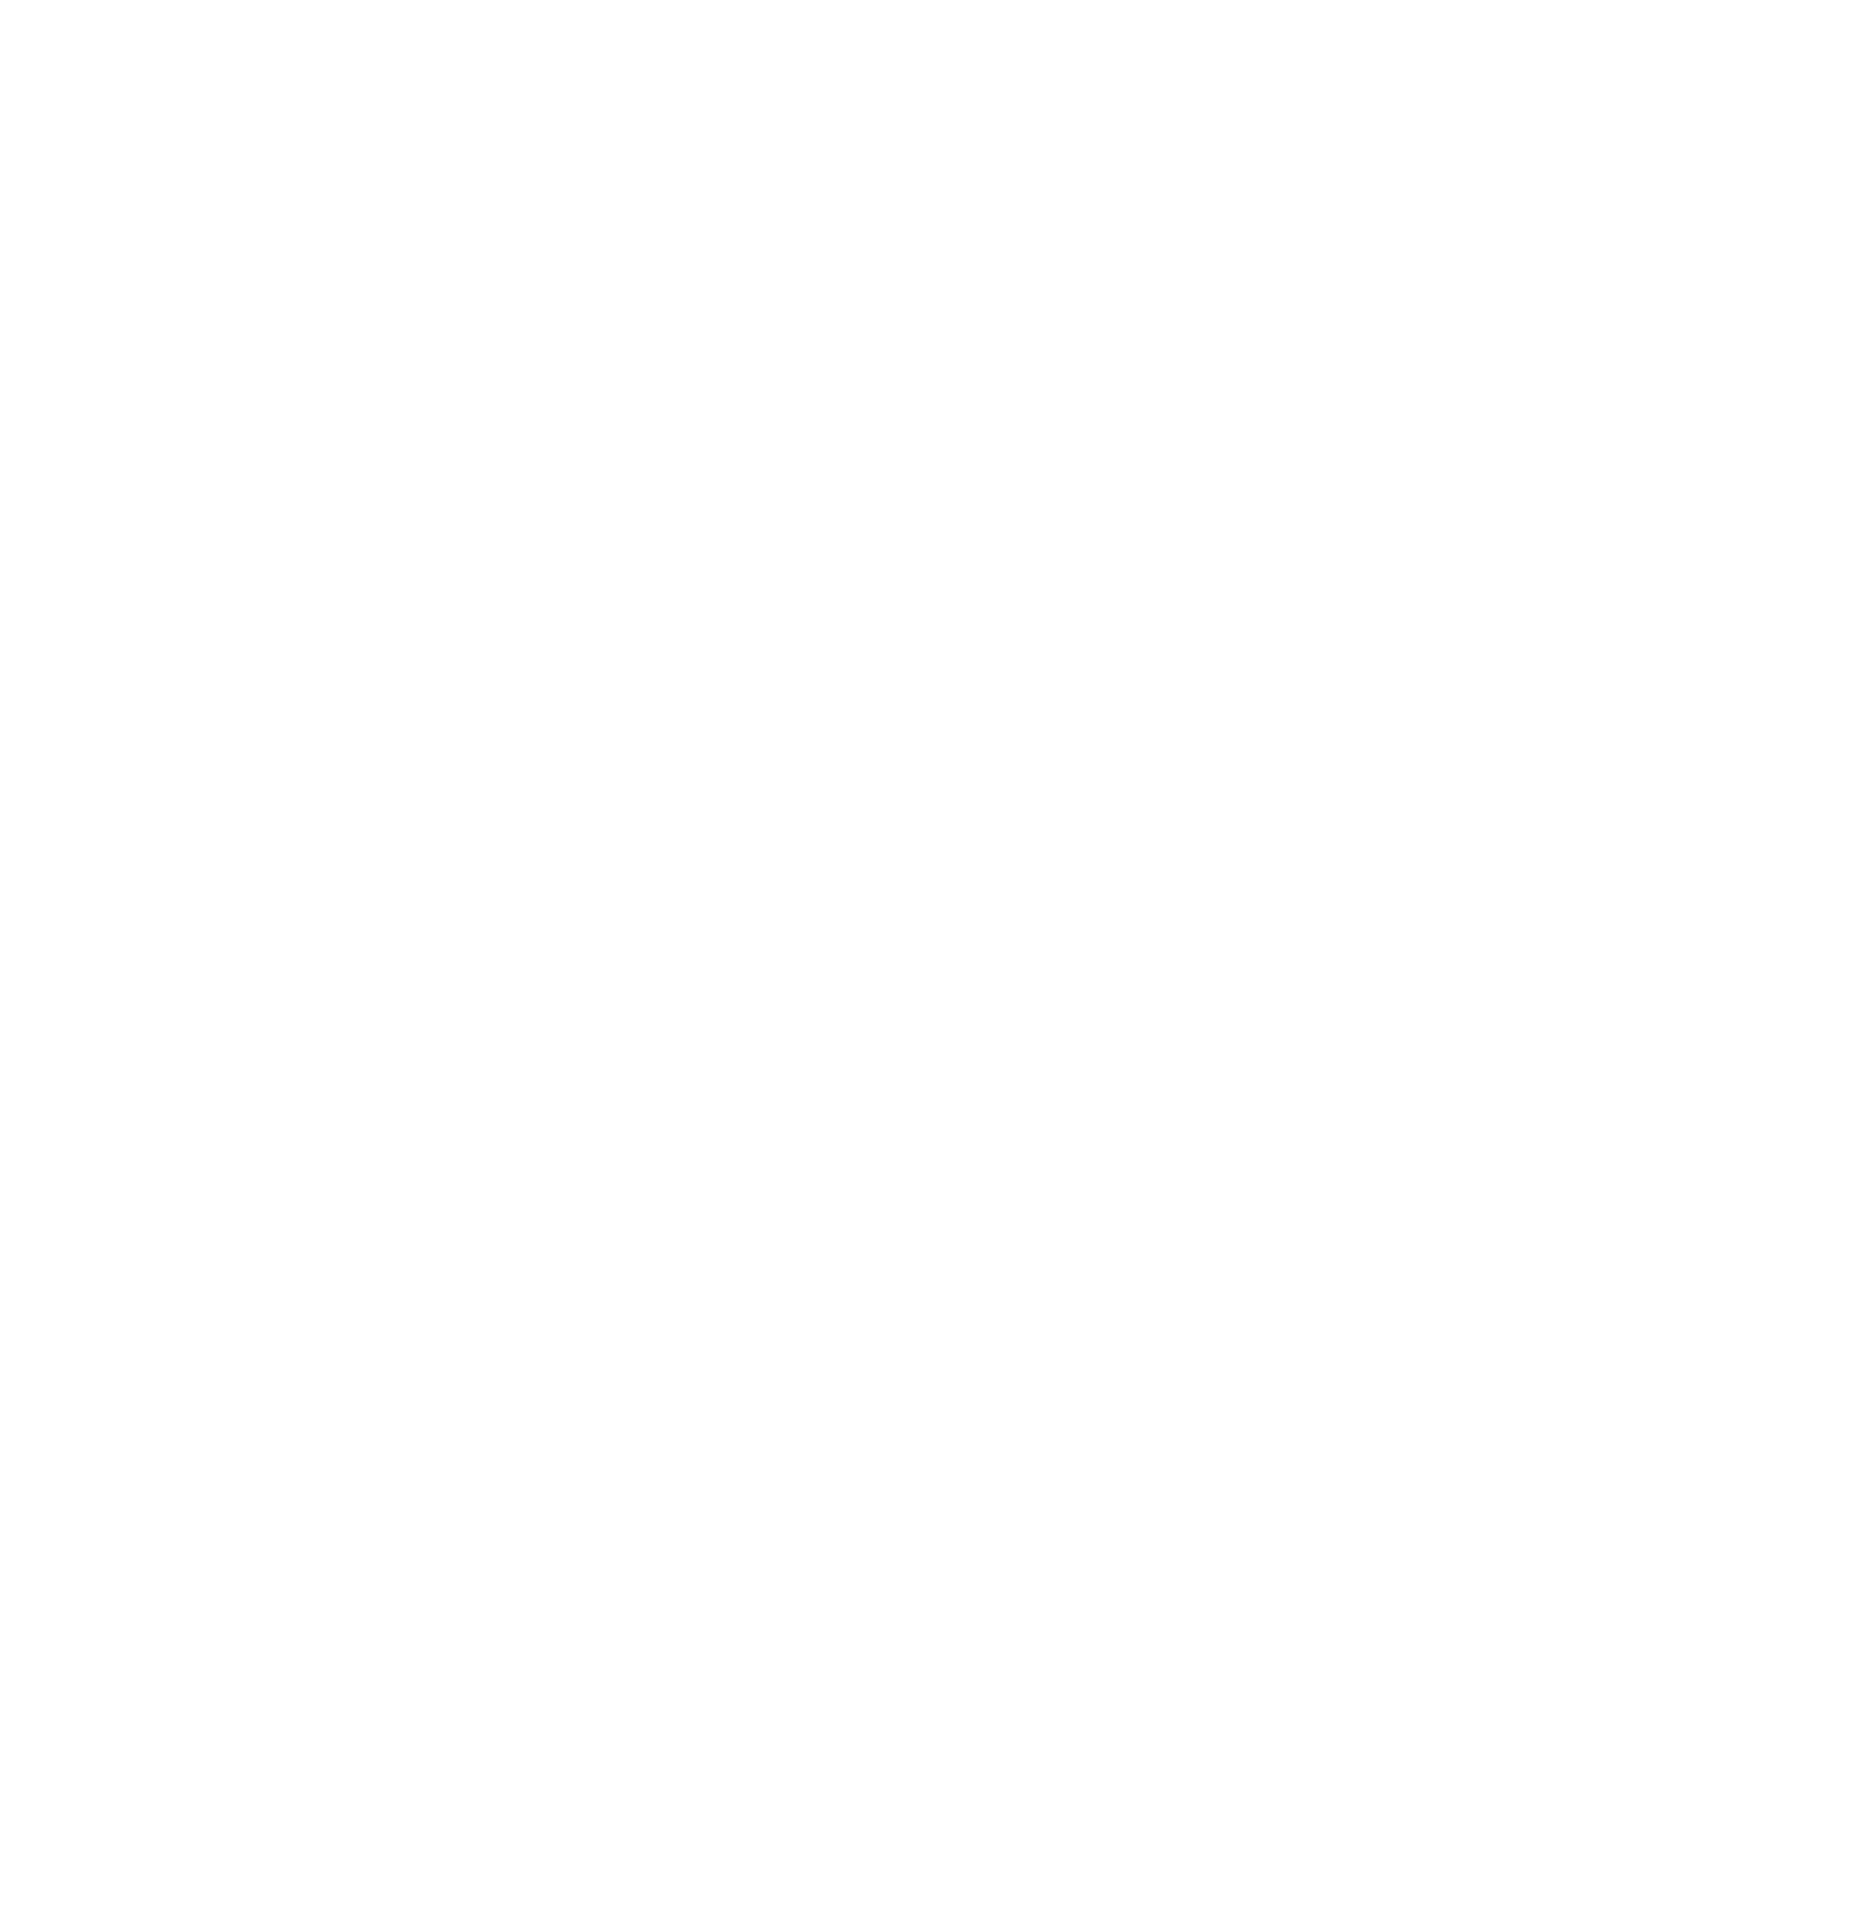 LGF Caffè